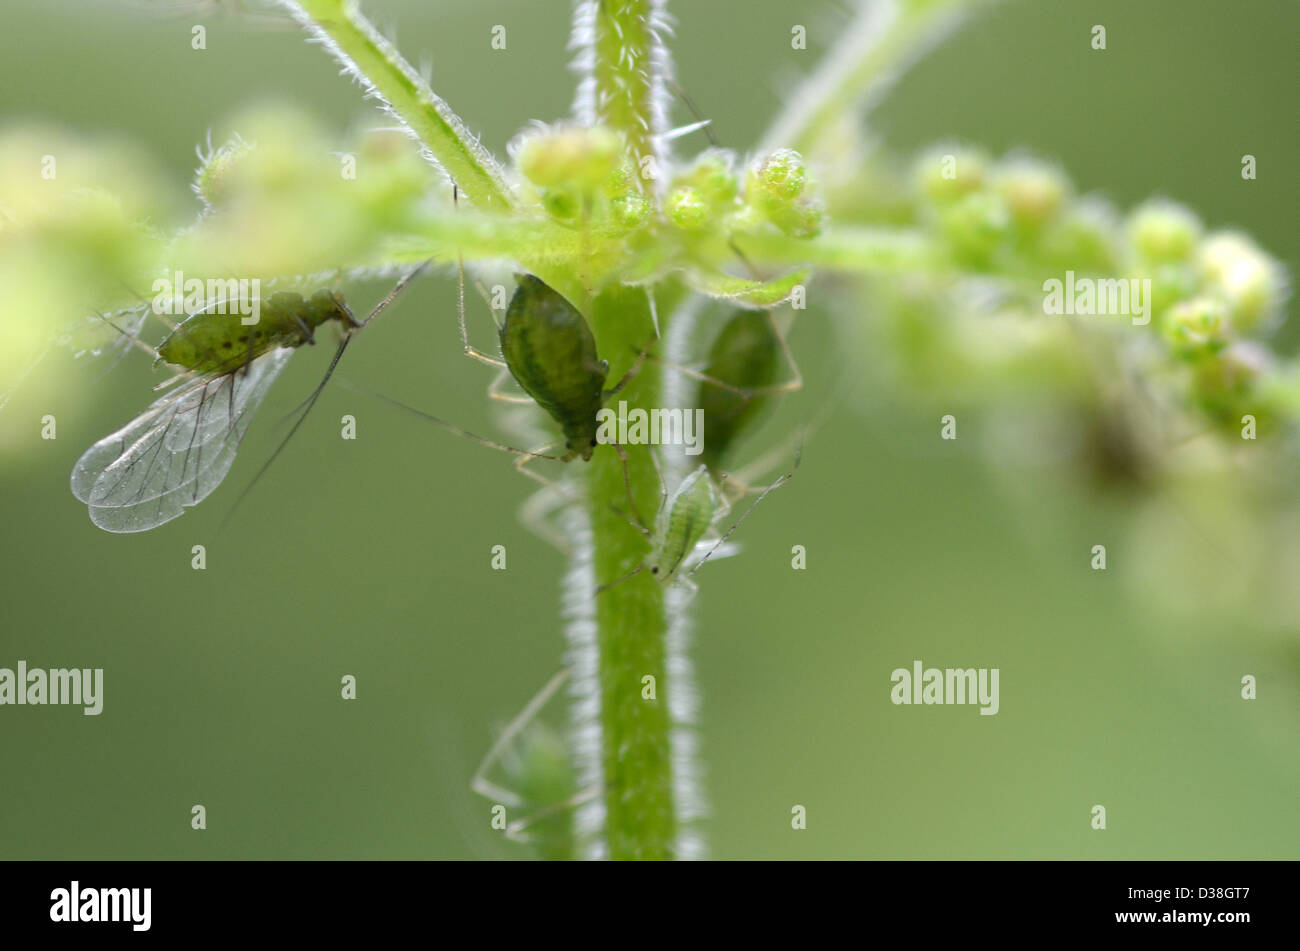 Greenfly en tallo de planta, pulgones, plagas de jardín, Foto de stock